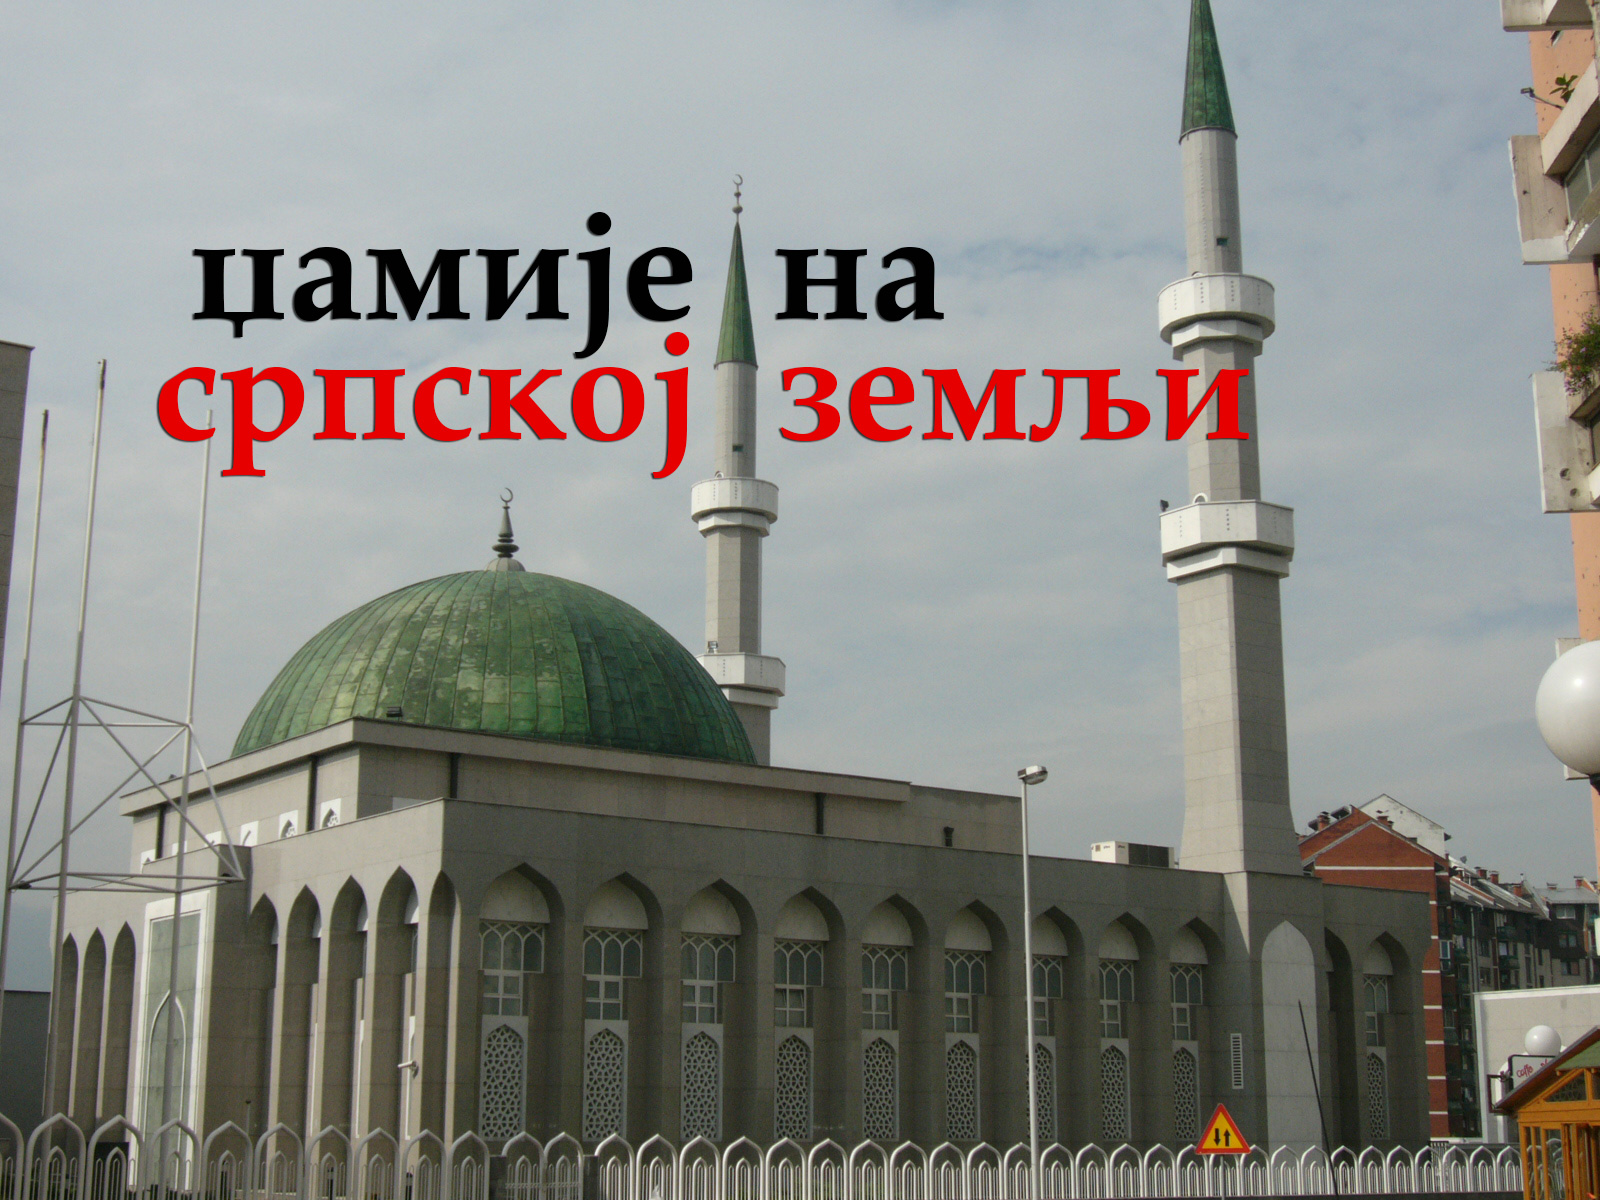 Džamije na srbskoj zemlji